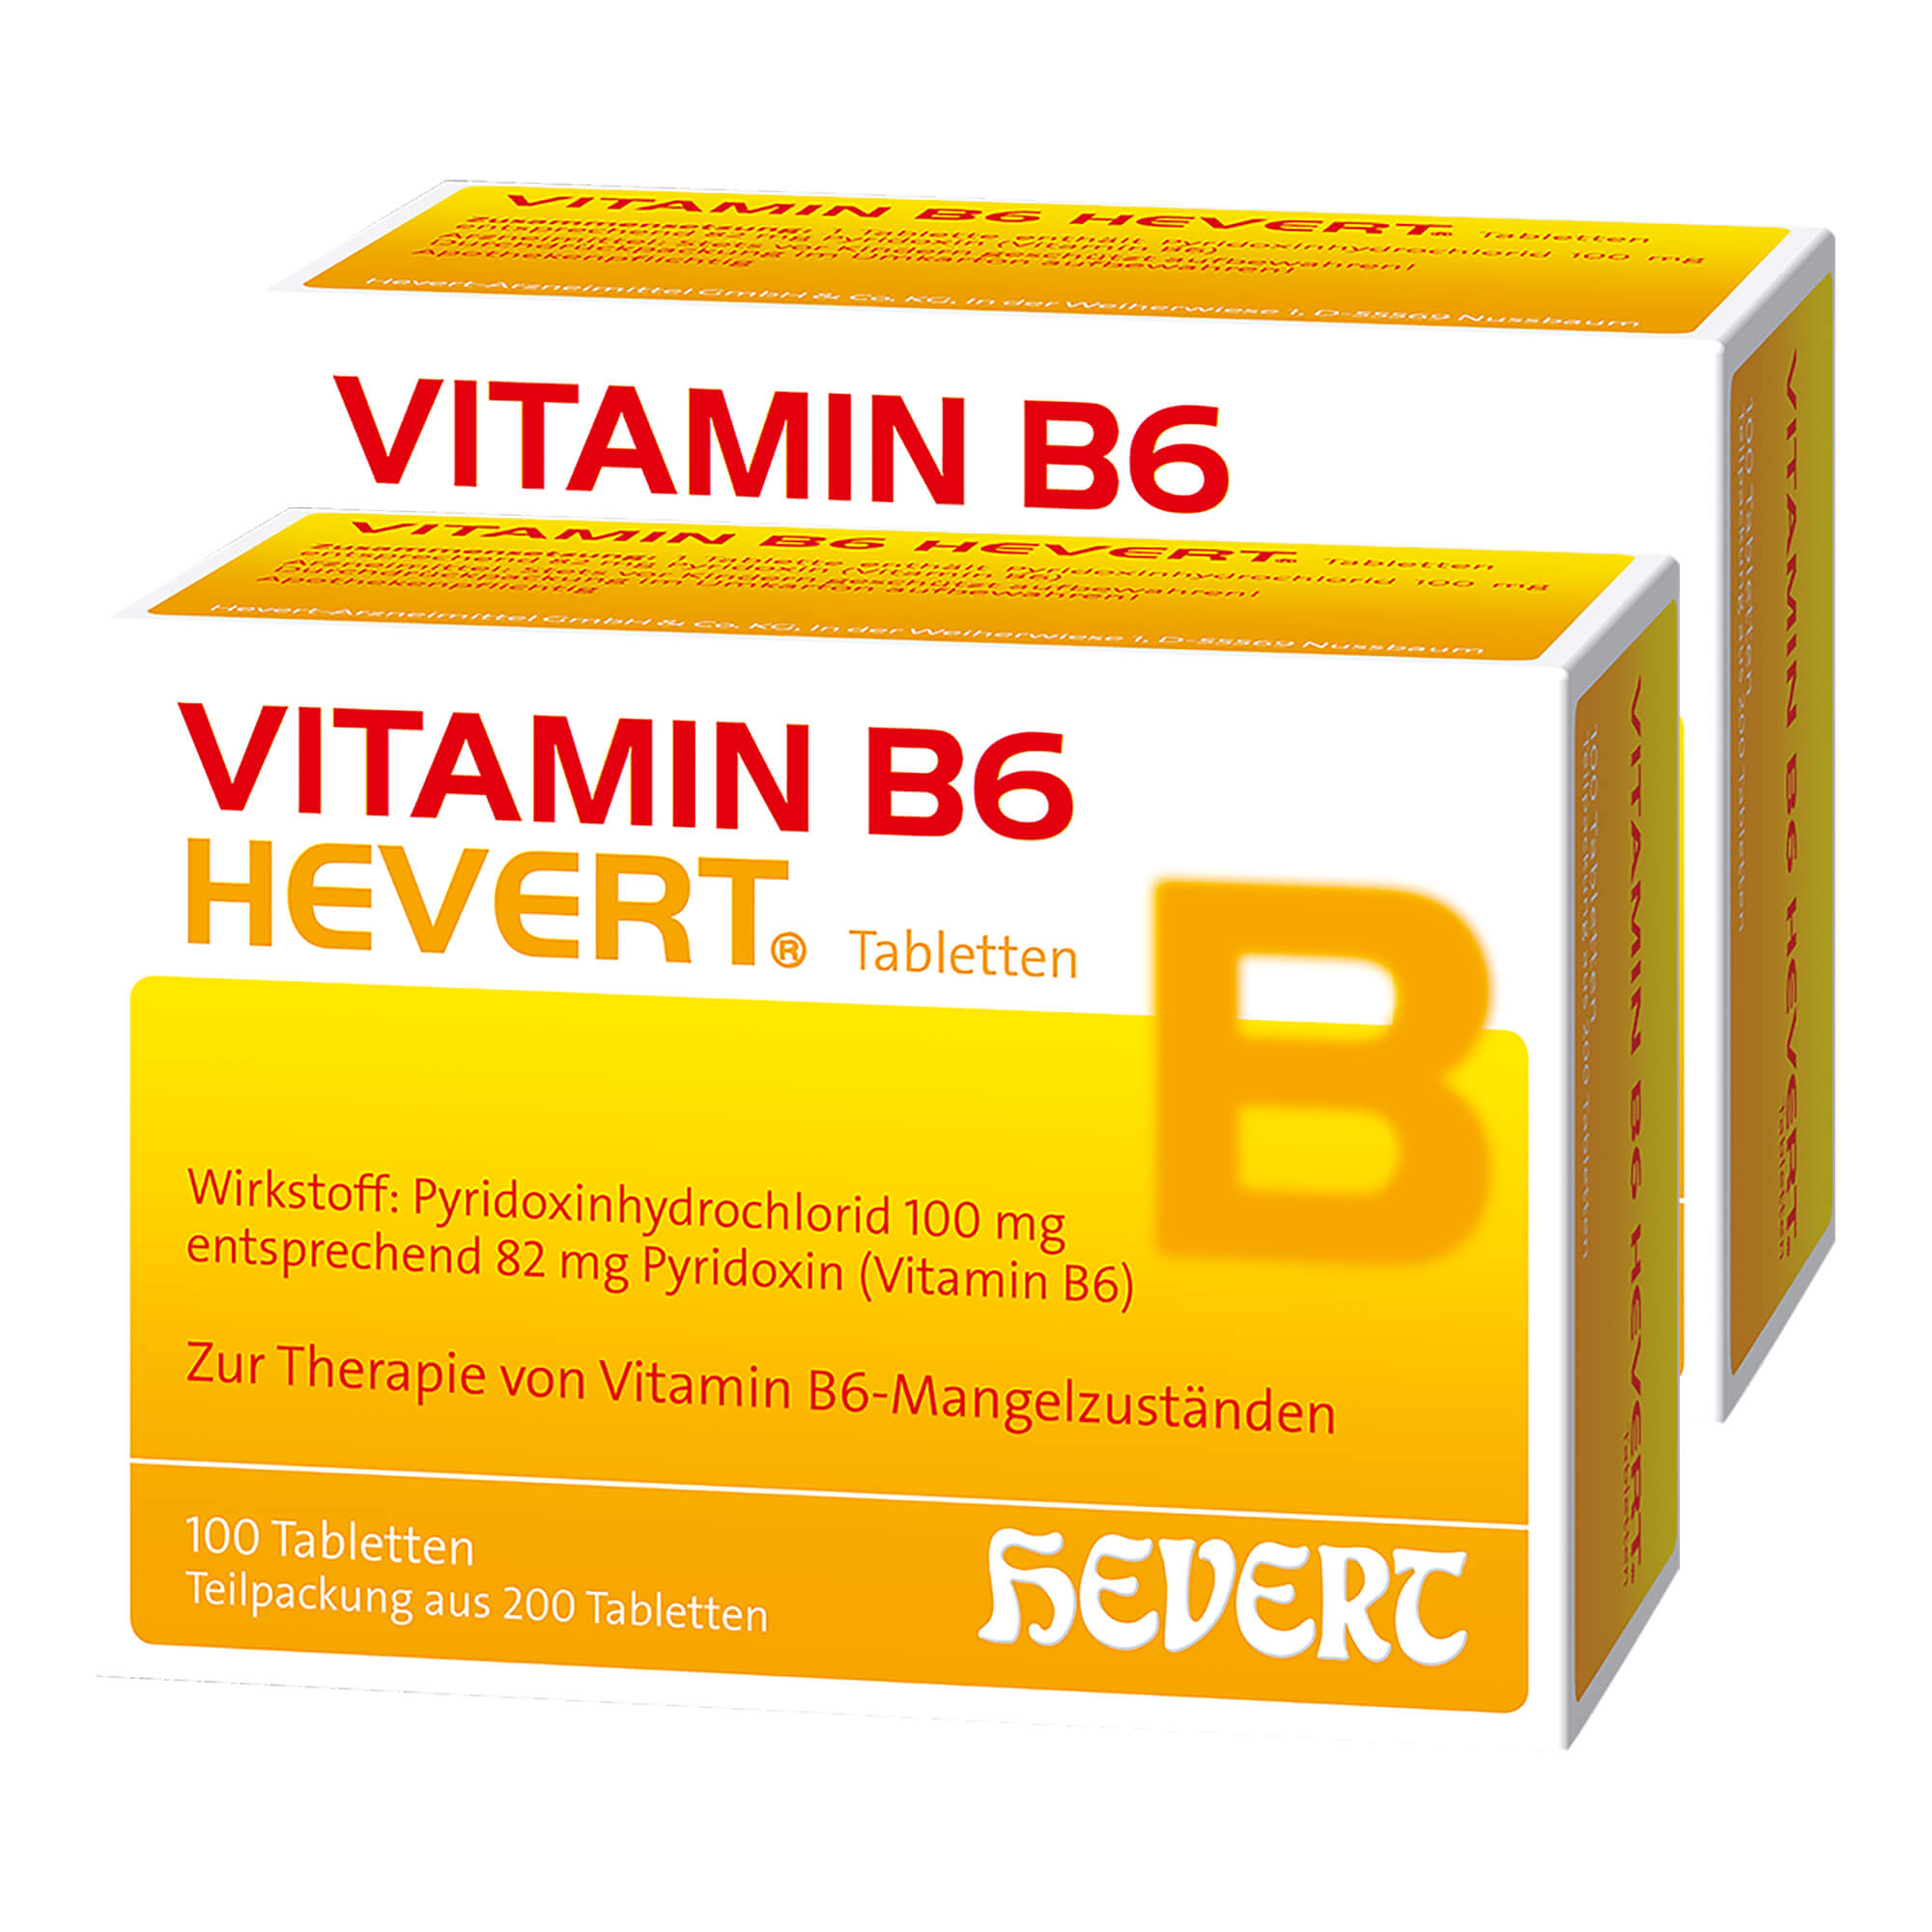 Für Erwachsene. Zur Behandlung einer peripheren Neuropathie (Nervenentzündung) infolge eines durch Arzneimitteleinnahme verursachten Vitamin B6-Mangels.